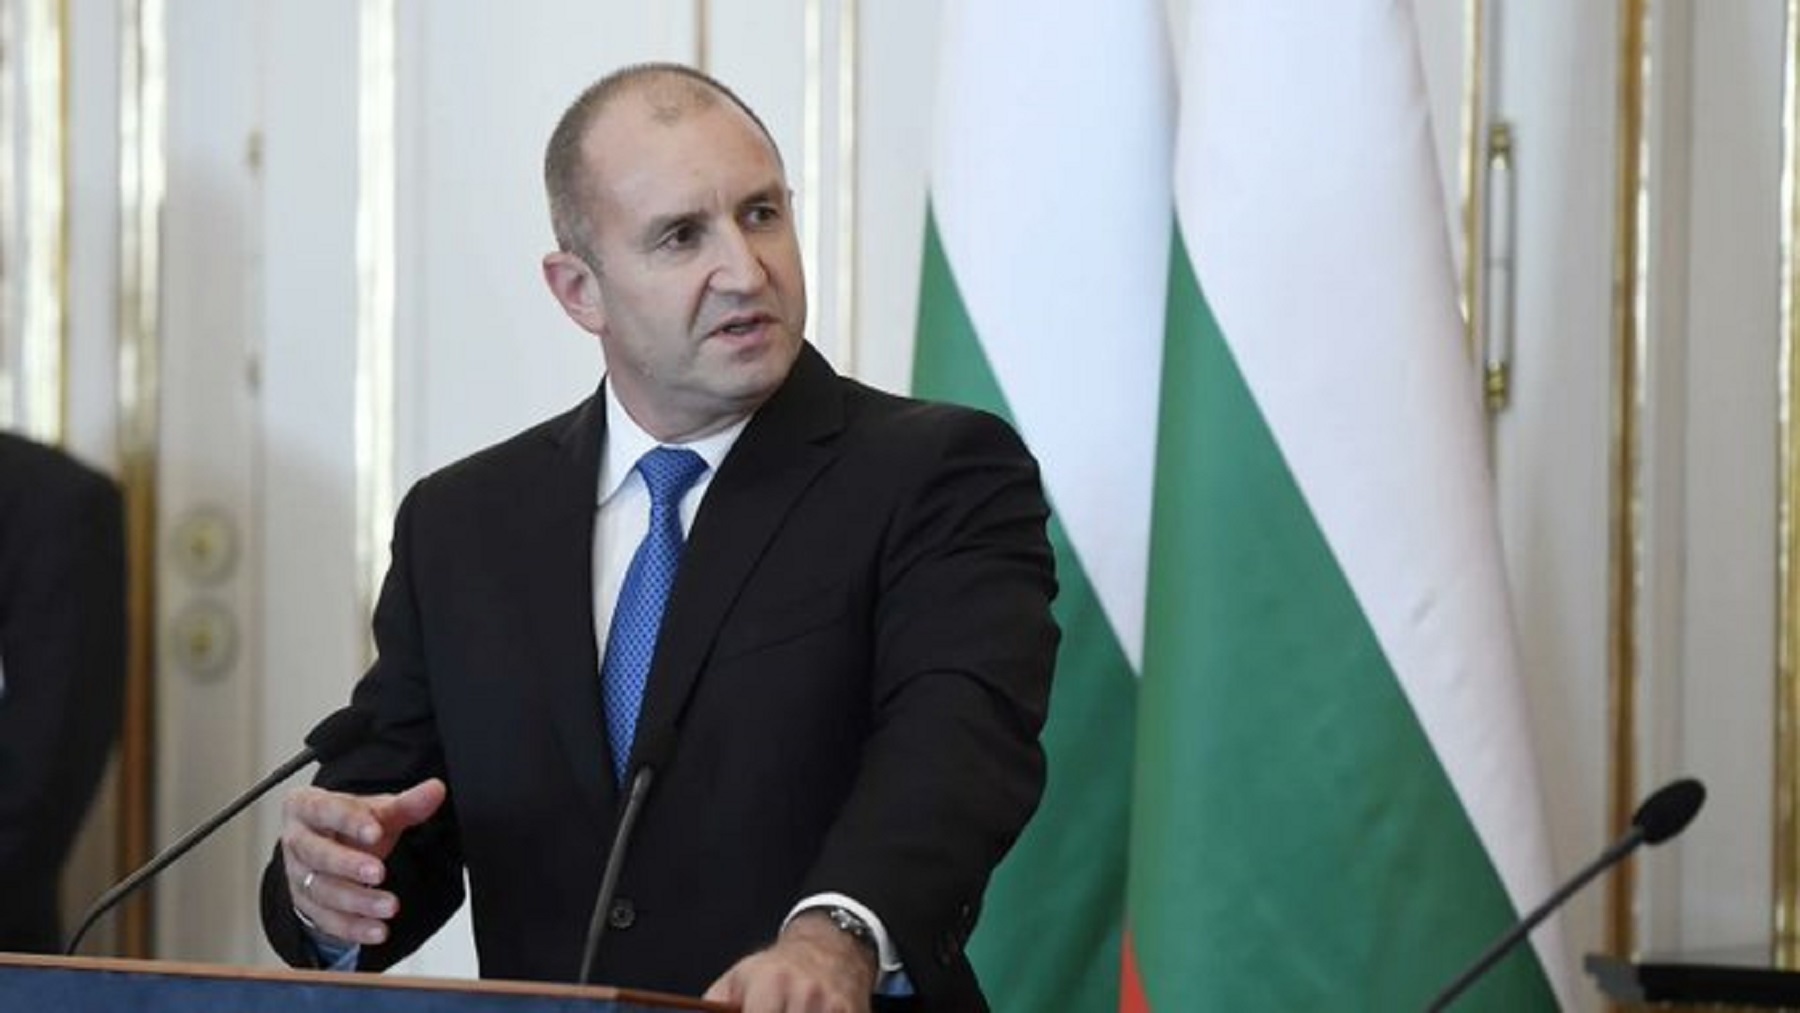 Ο πρόεδρος της Βουλγαρίας είναι κατά της εμπλοκής της χώρας του στην σύγκρουση της Ουκρανίας